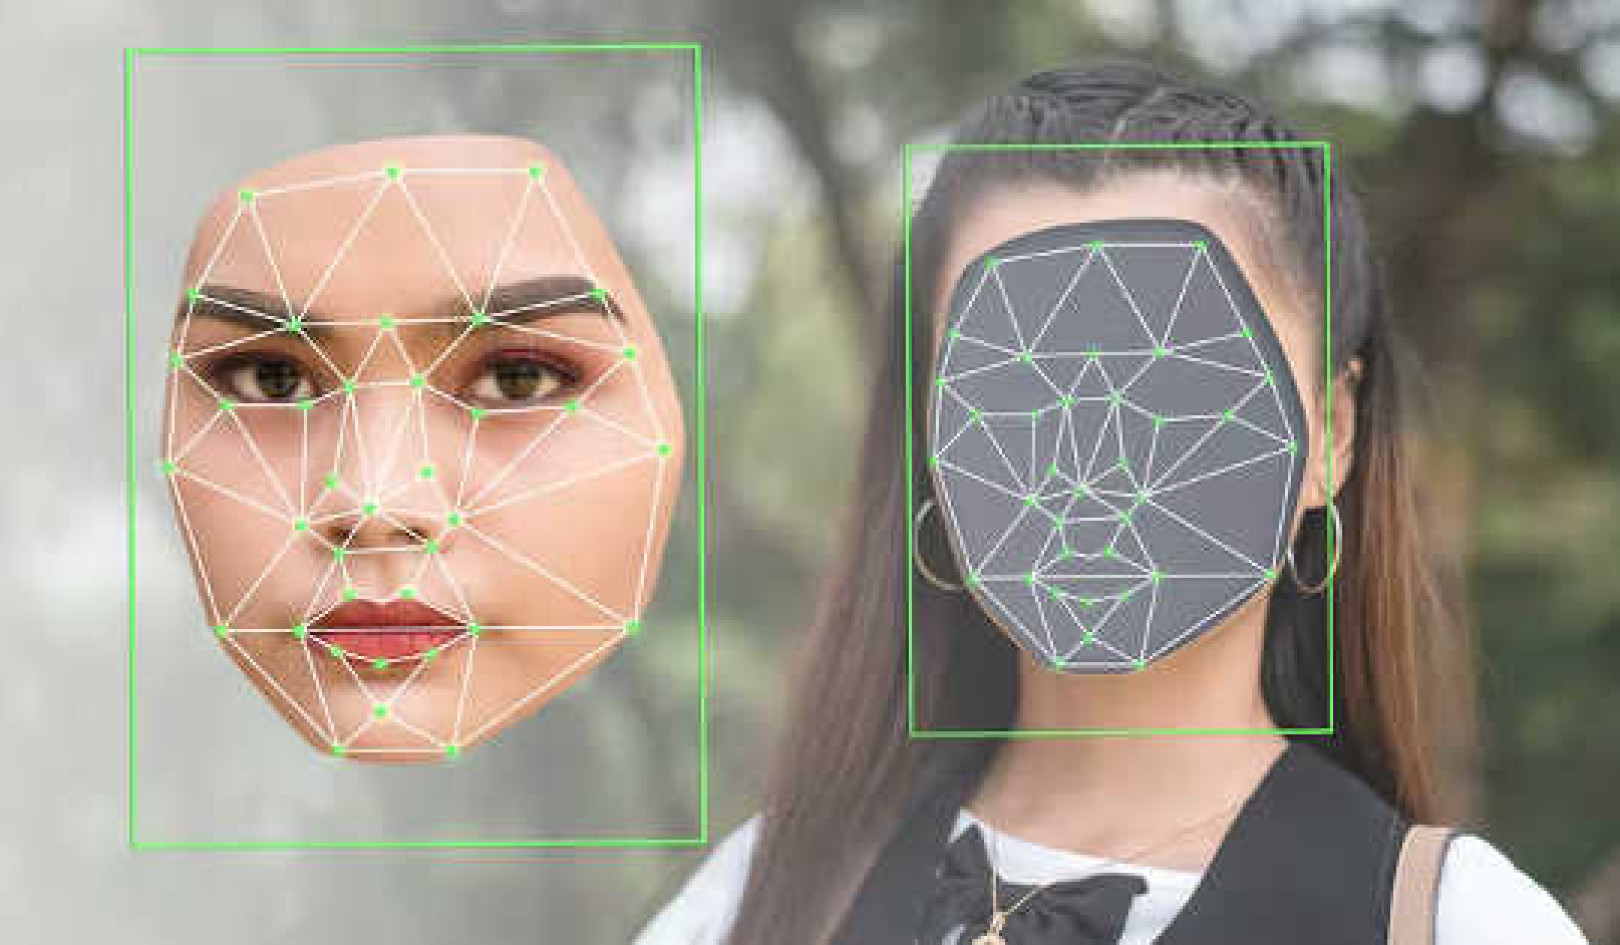 Việc sử dụng Deepfakes có thể gây ra sự nghi ngờ, tạo ra sự nhầm lẫn và mất lòng tin ở người xem